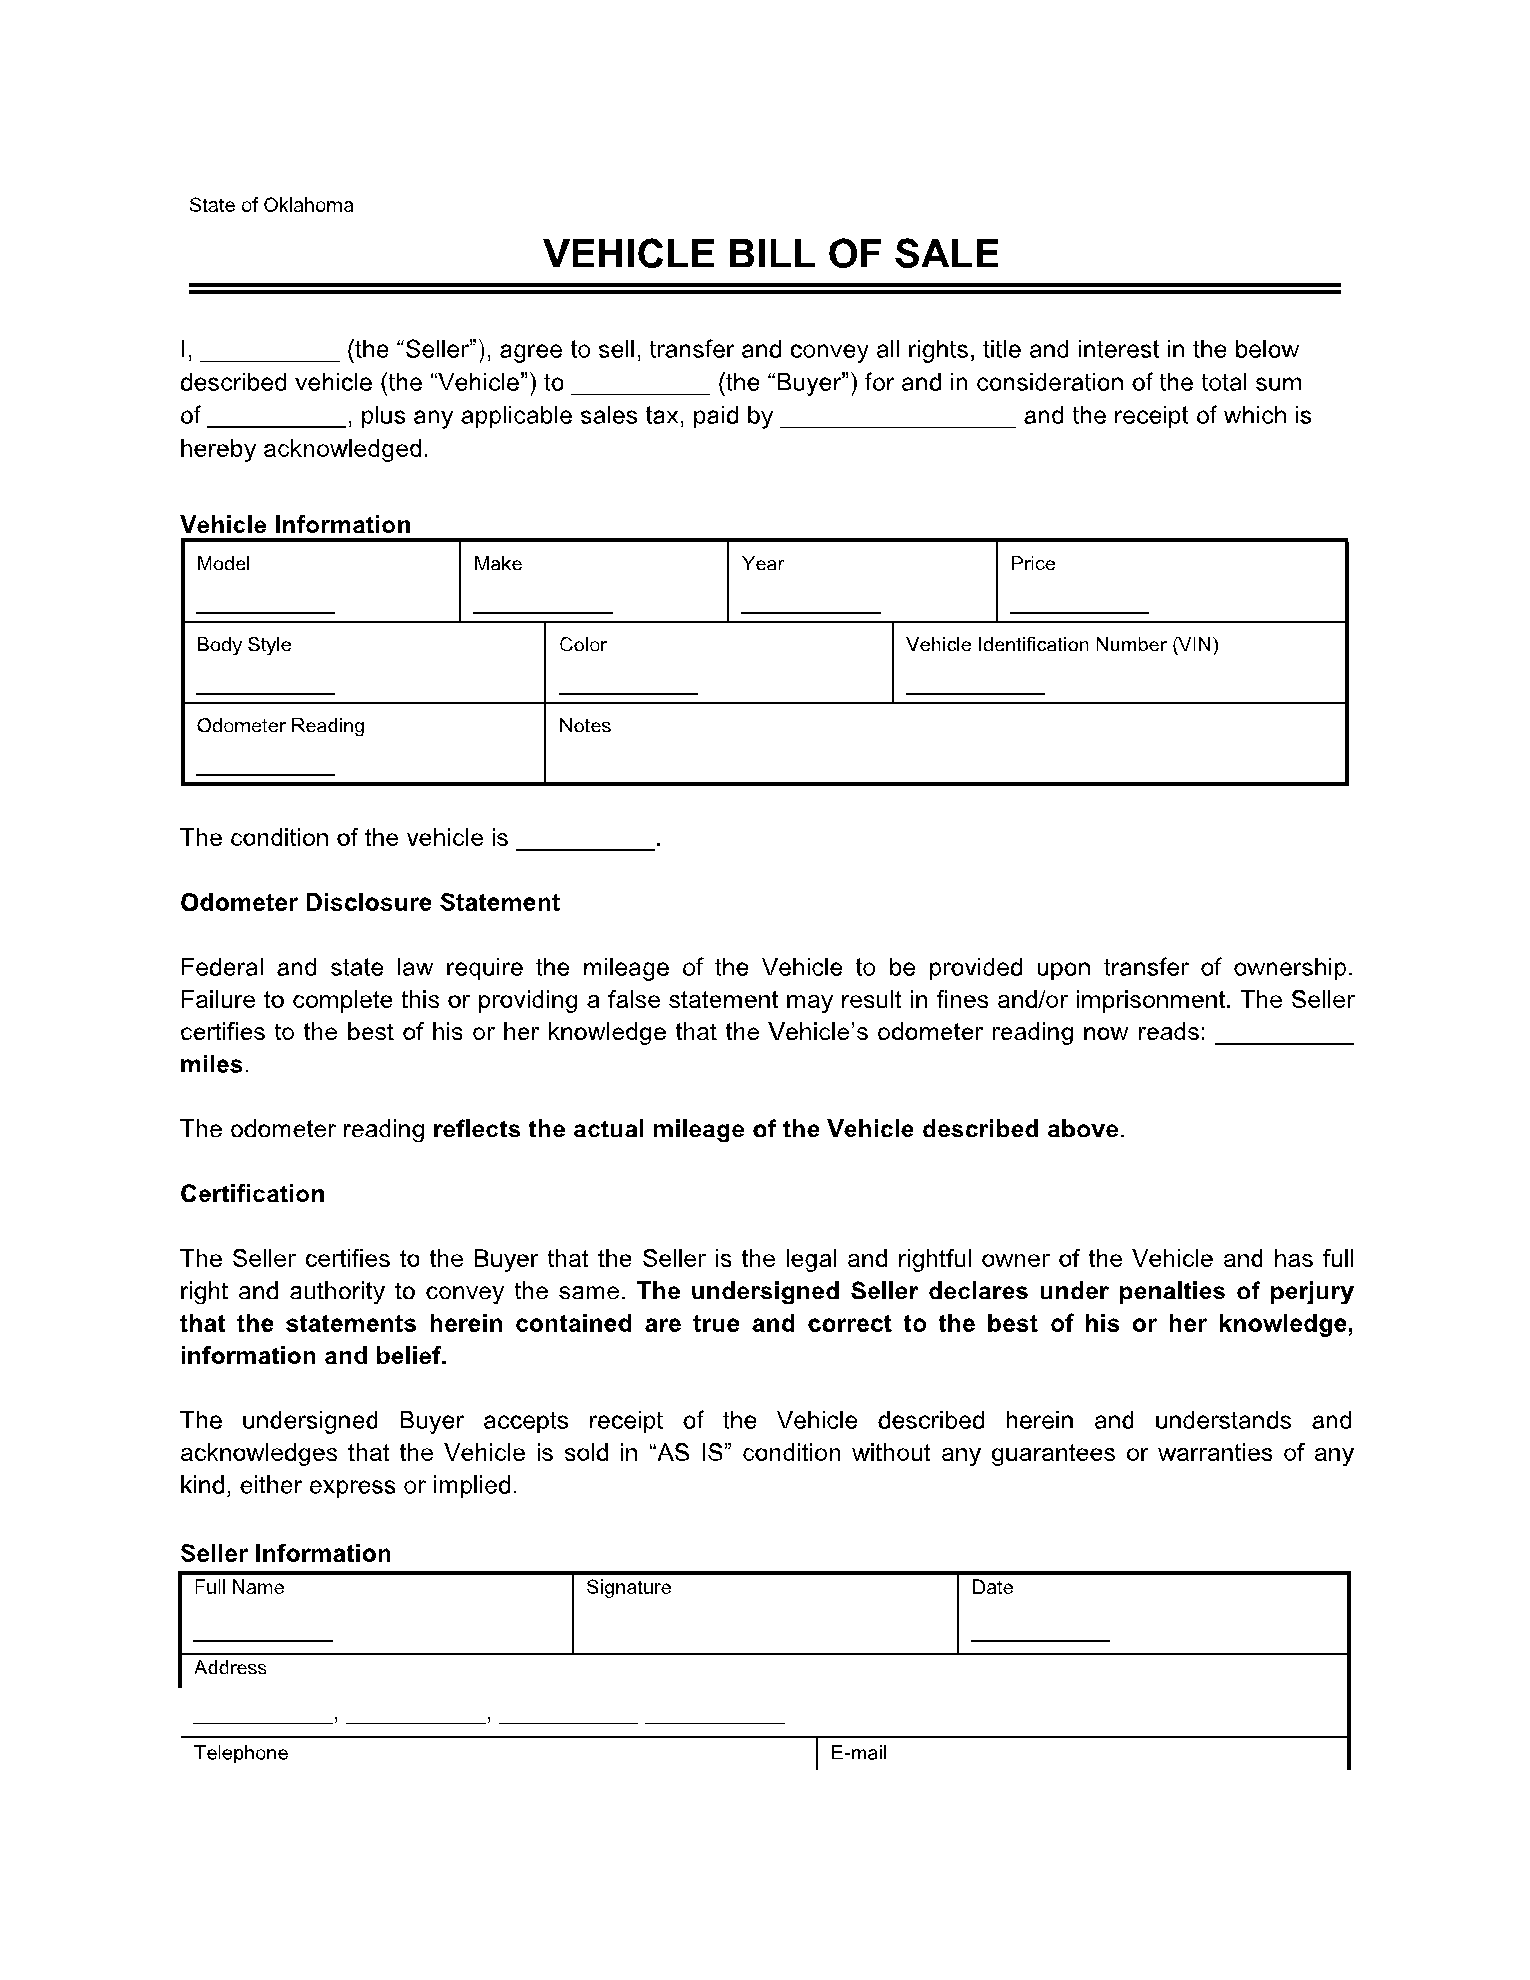 Oklahoma Vehicle Bill of Sale 1